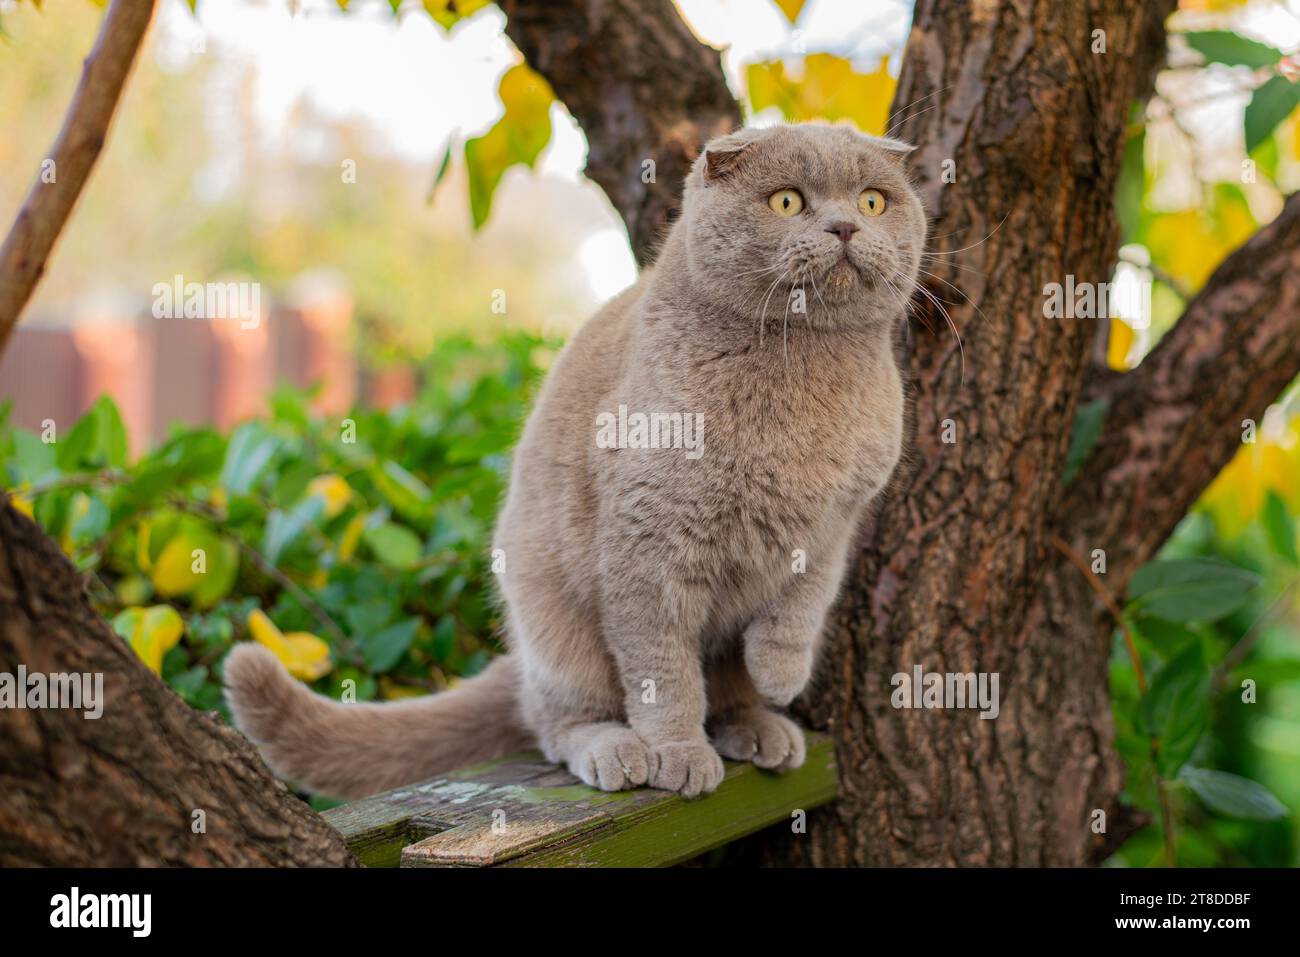 Katze klettert auf einen Baum und kommt vom Baum. Katze auf dem Baum auf natürlichem Hintergrund. Stockfoto